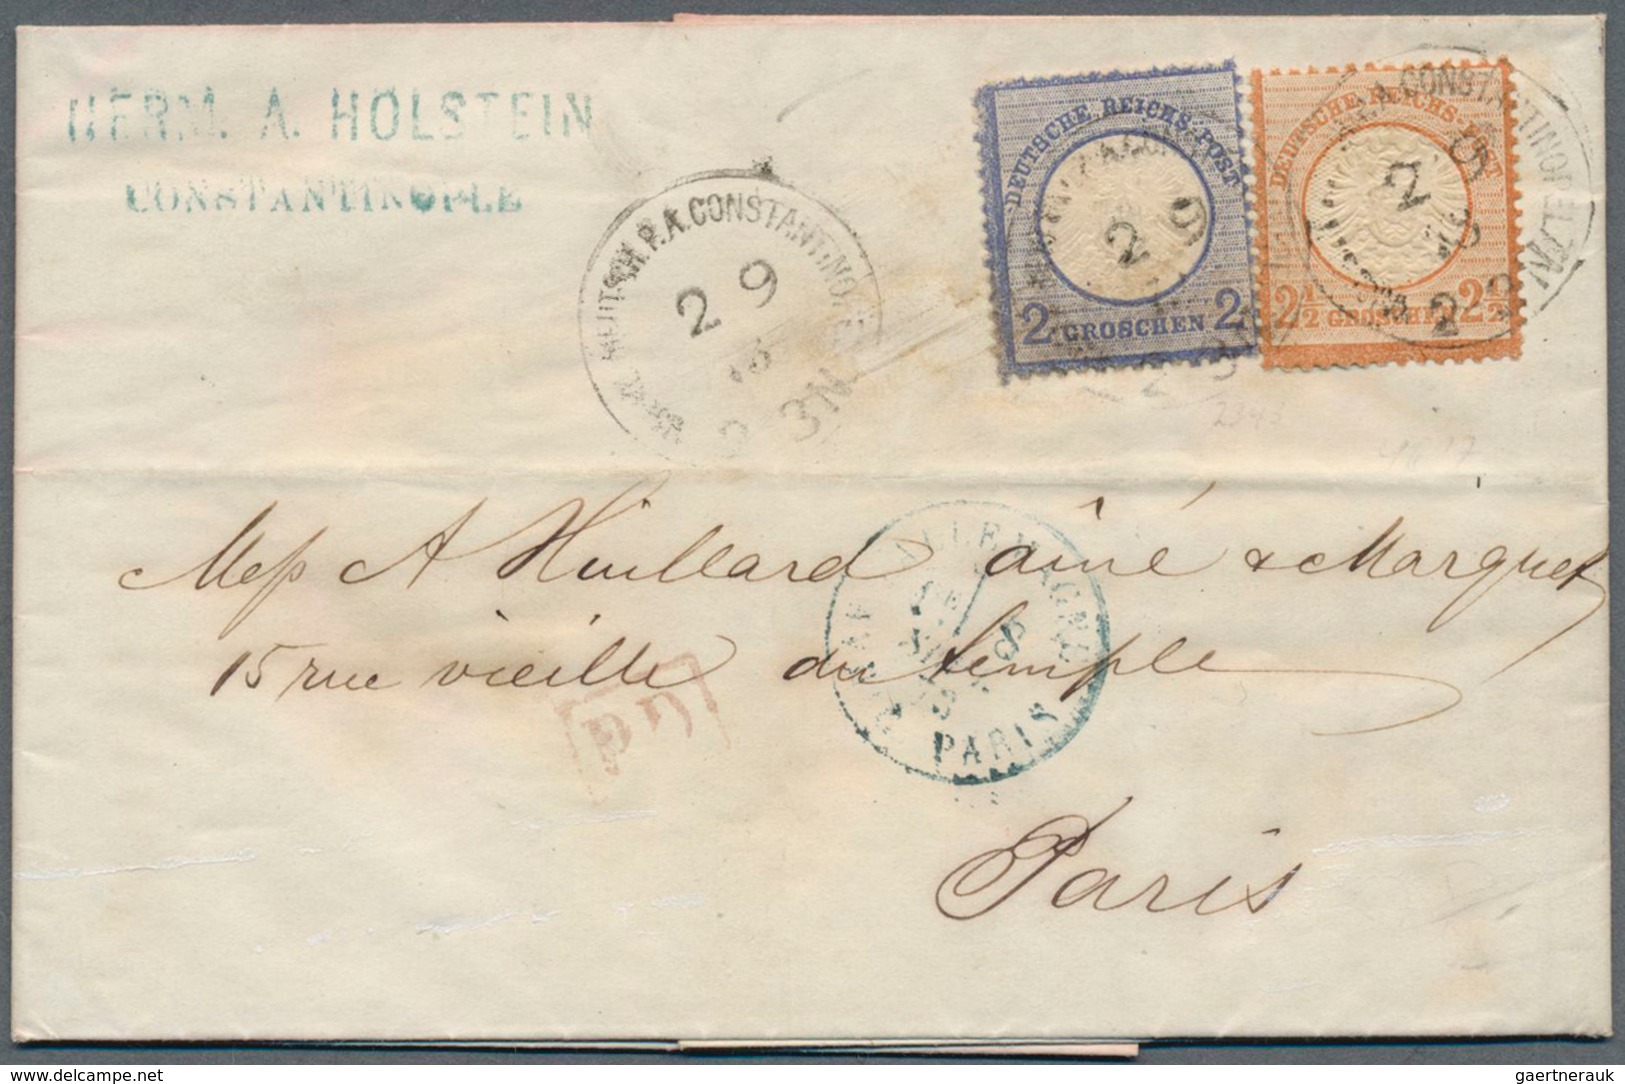 18499 Deutsche Post In Der Türkei - Vorläufer: 1872, 2 Gr Ultramarin Und 2 1/2 Gr Rötlichbraun, MiF Auf Ko - Turkey (offices)